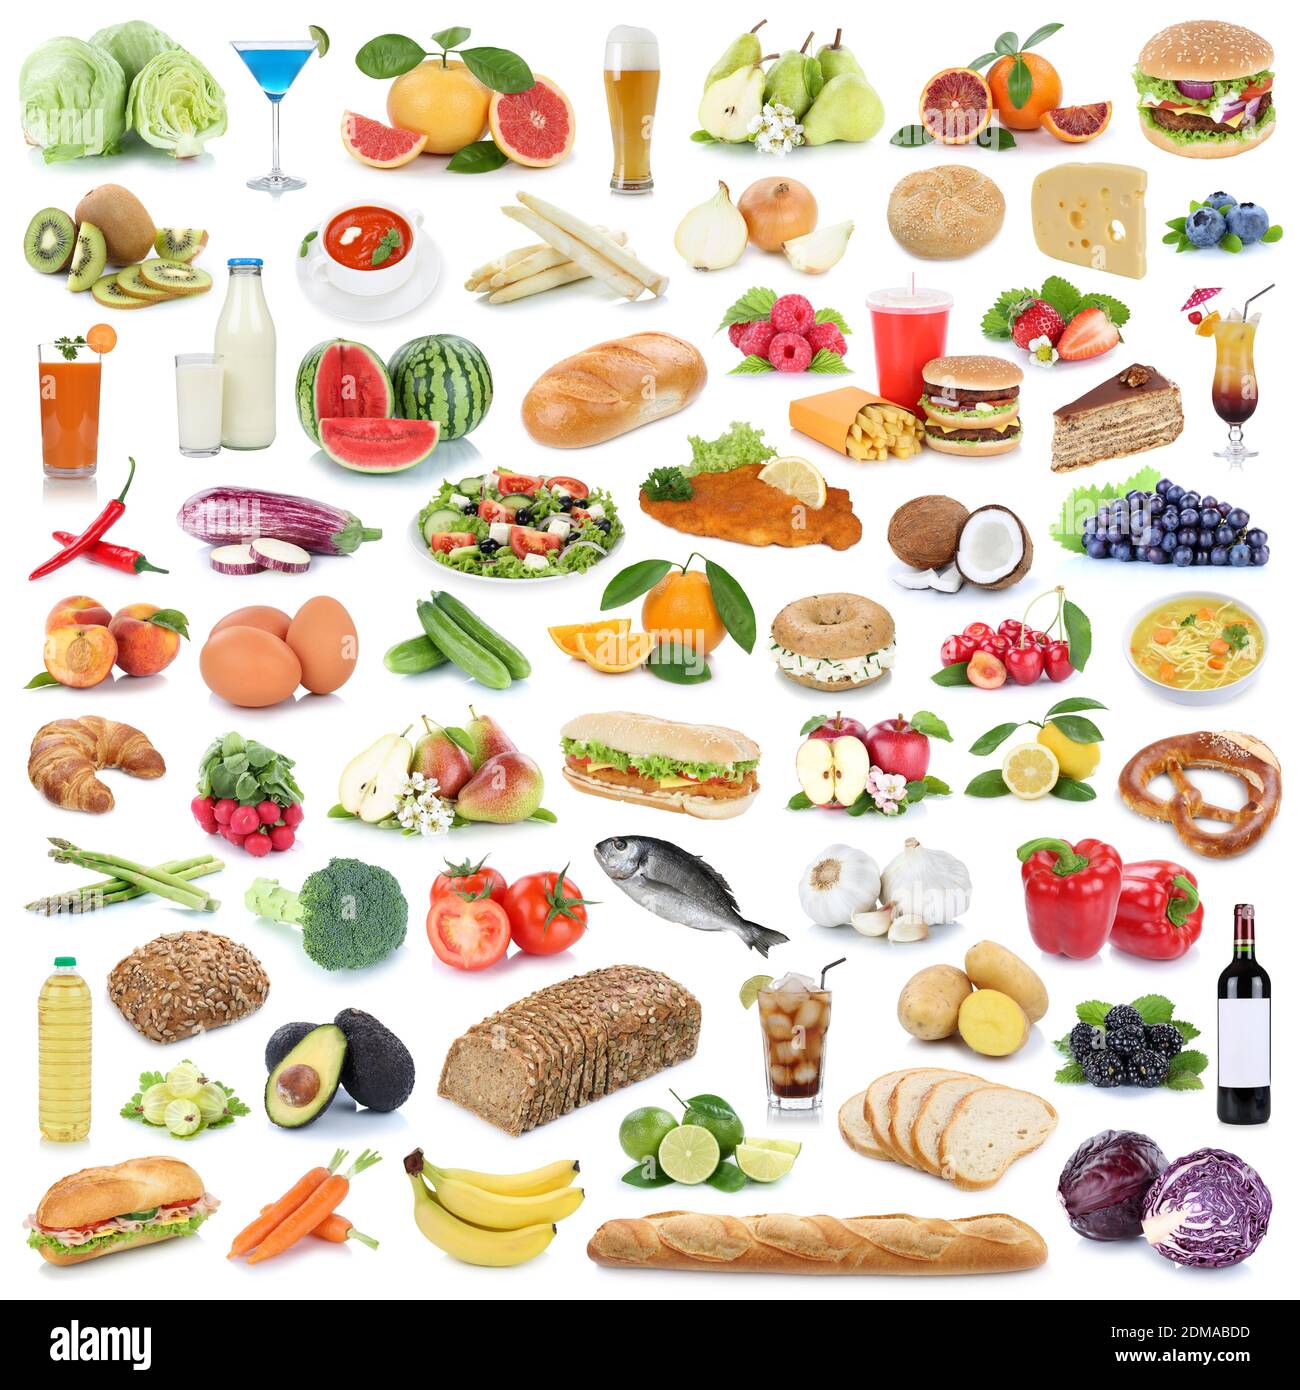 Sammlung Essen gesunde Ernährung Obst und Gemüse Früchte Lebensmittel Freisteller freigestellt isoliert Stock Photo